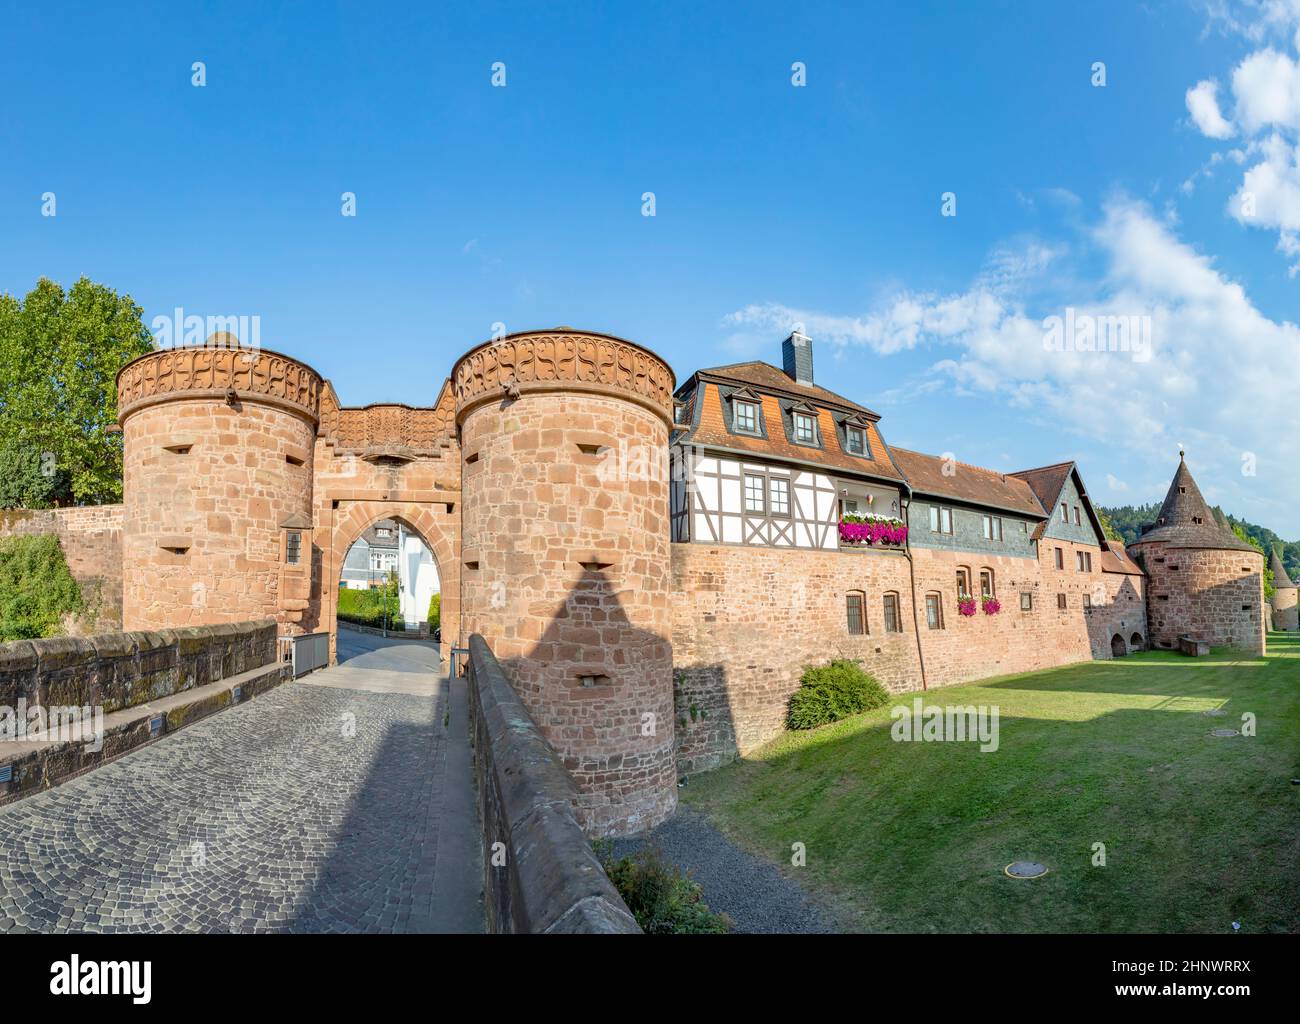 Vue panoramique sur la porte nord de la ville et le mur historique de la ville avec des maisons à colombages à Budingen, en Allemagne Banque D'Images